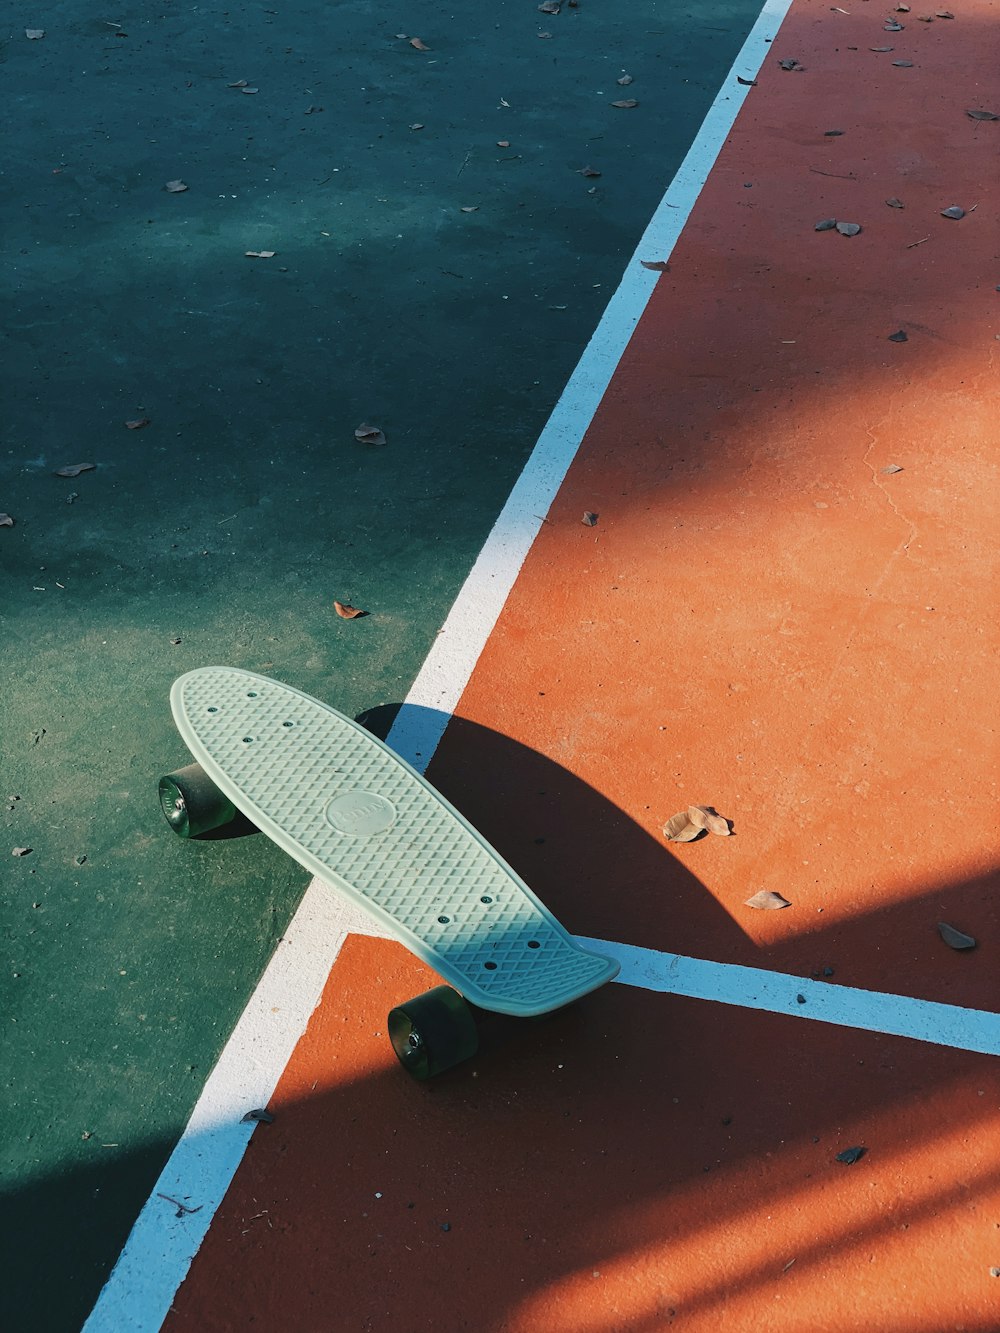 茶色と白のコンクリートの床に白と黒のスケートボード